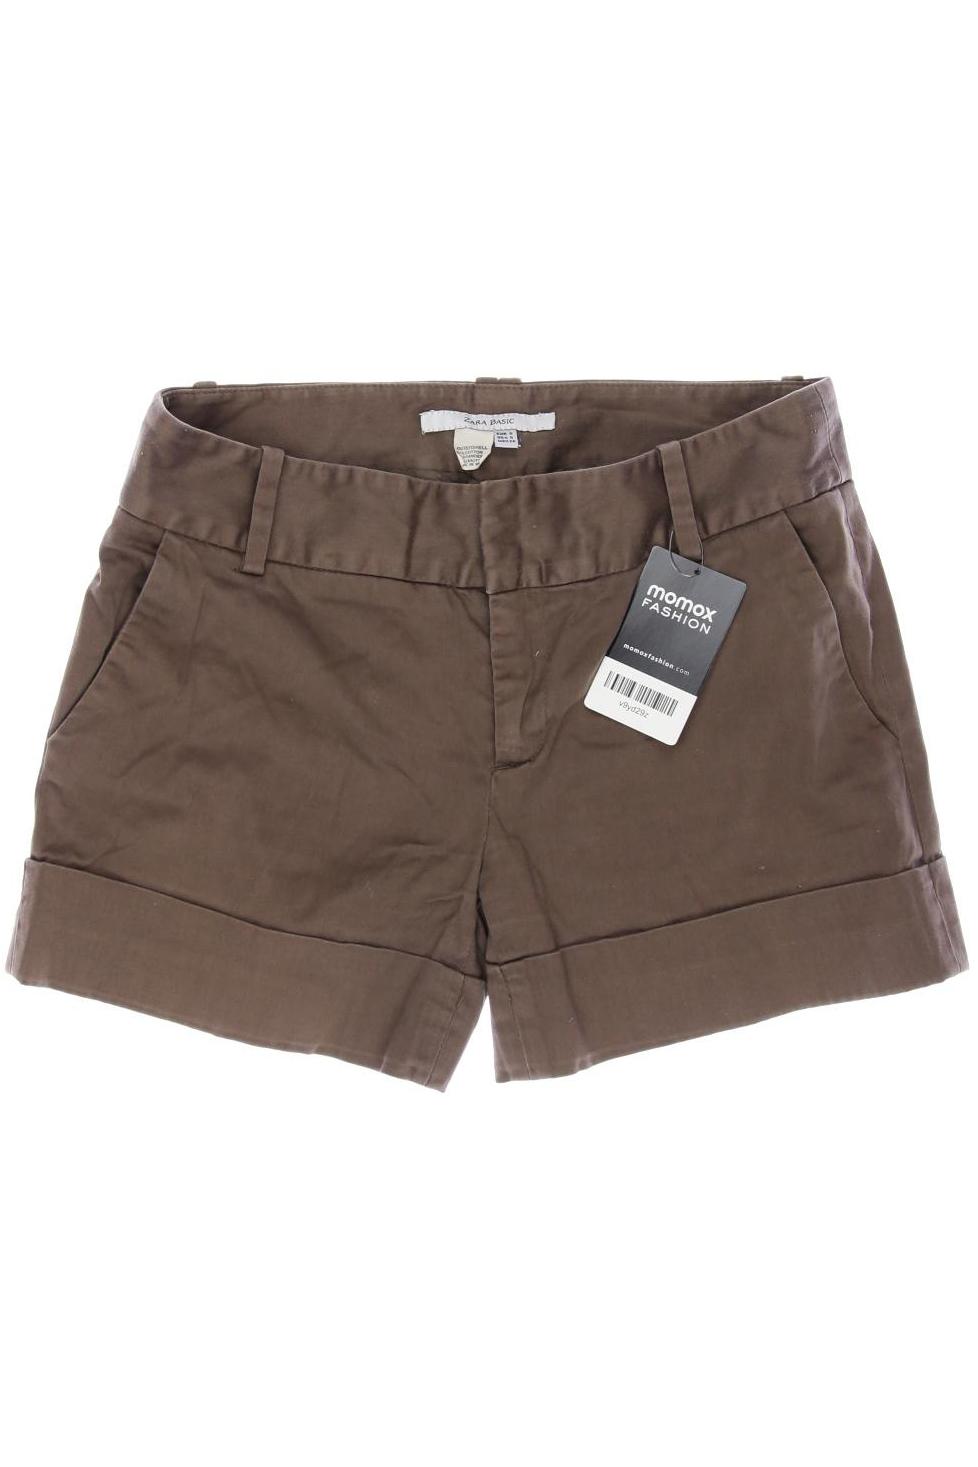 Zara Damen Shorts, braun, Gr. 36 von ZARA